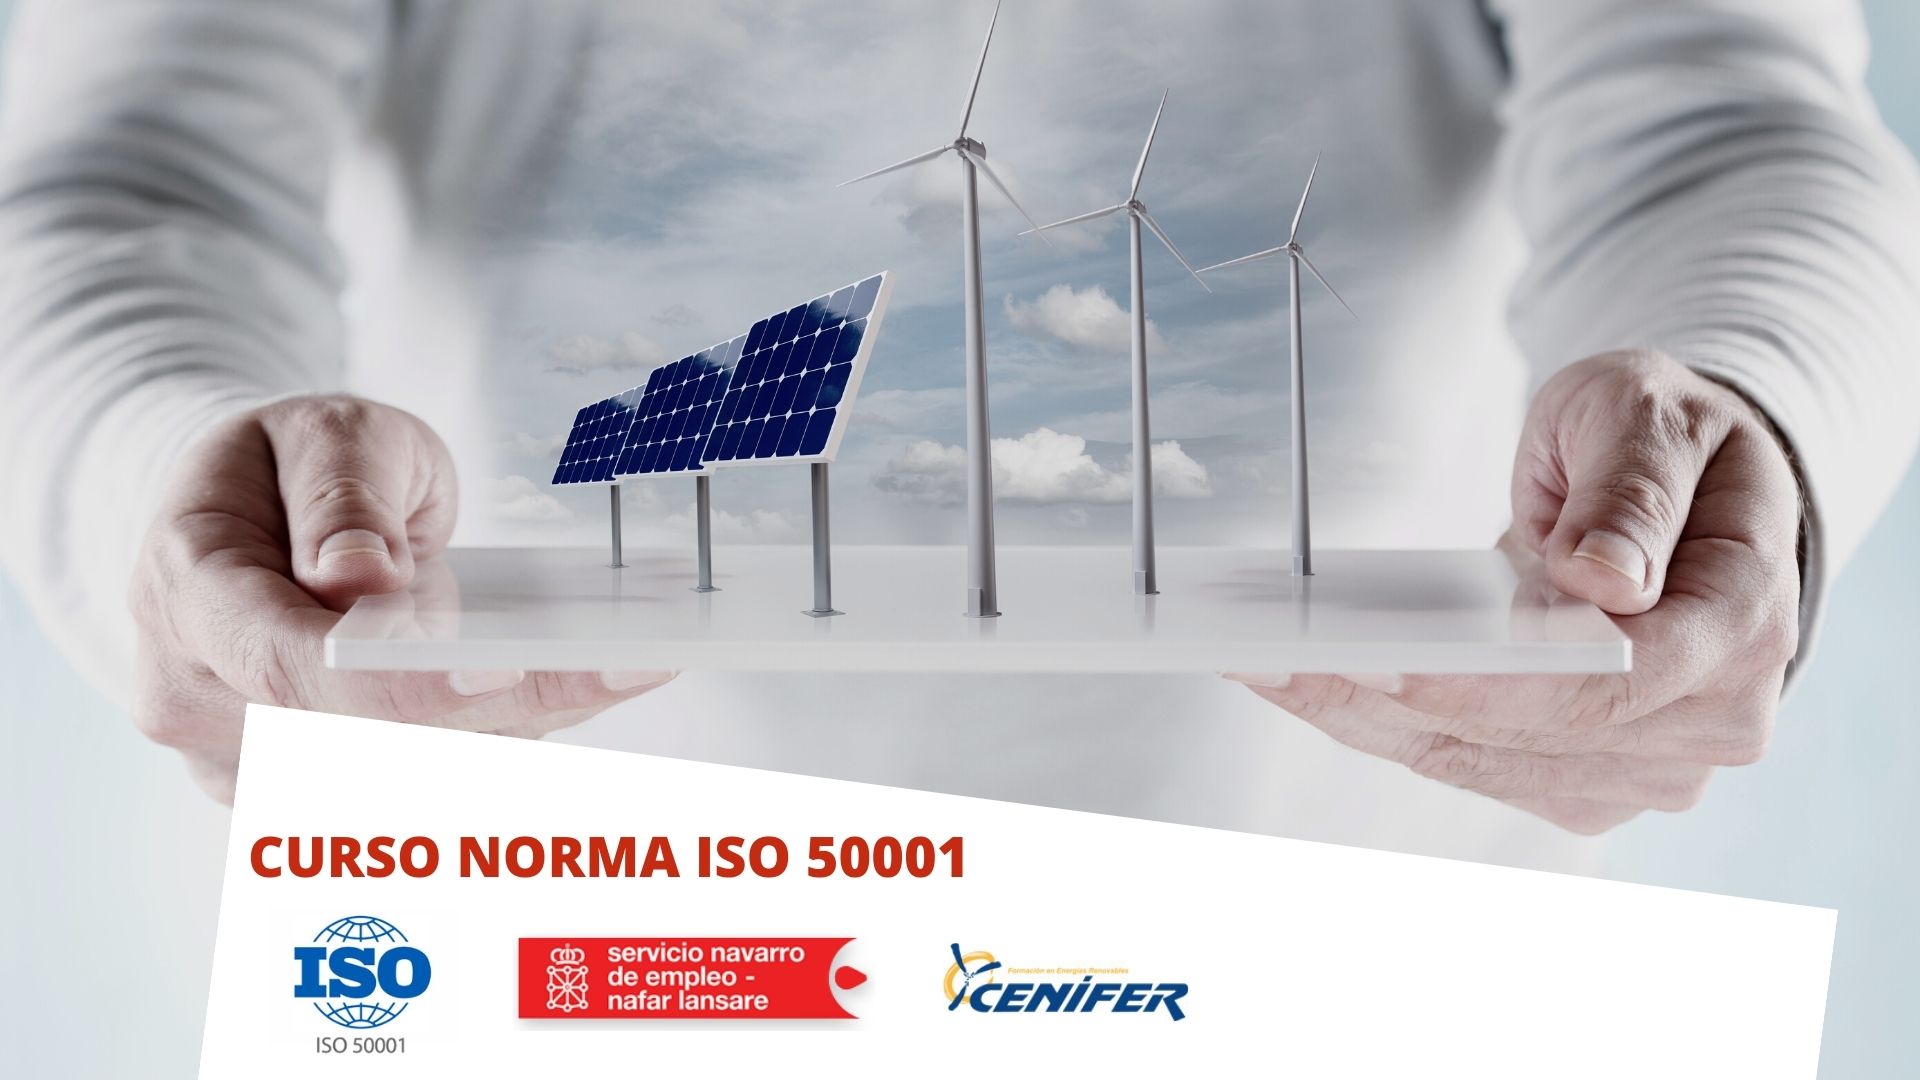 Cenifer-Curso Norma ISO 50001